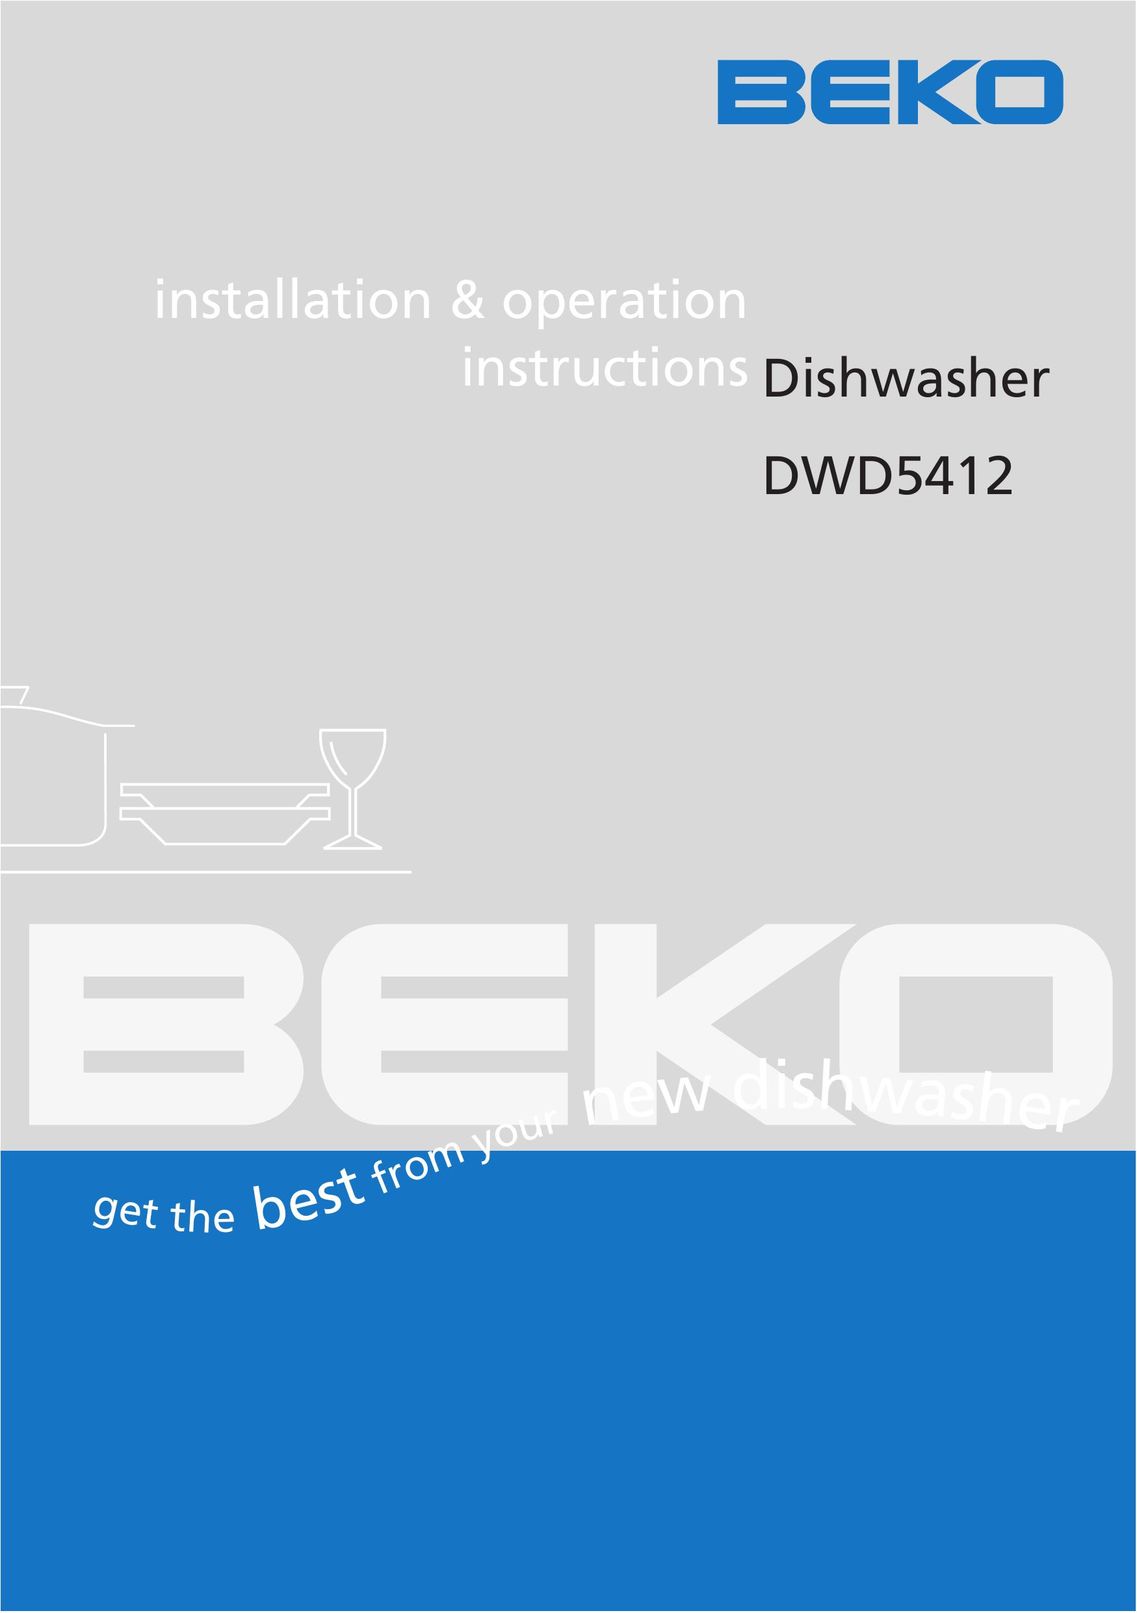 Beko DWD5412 Dishwasher User Manual